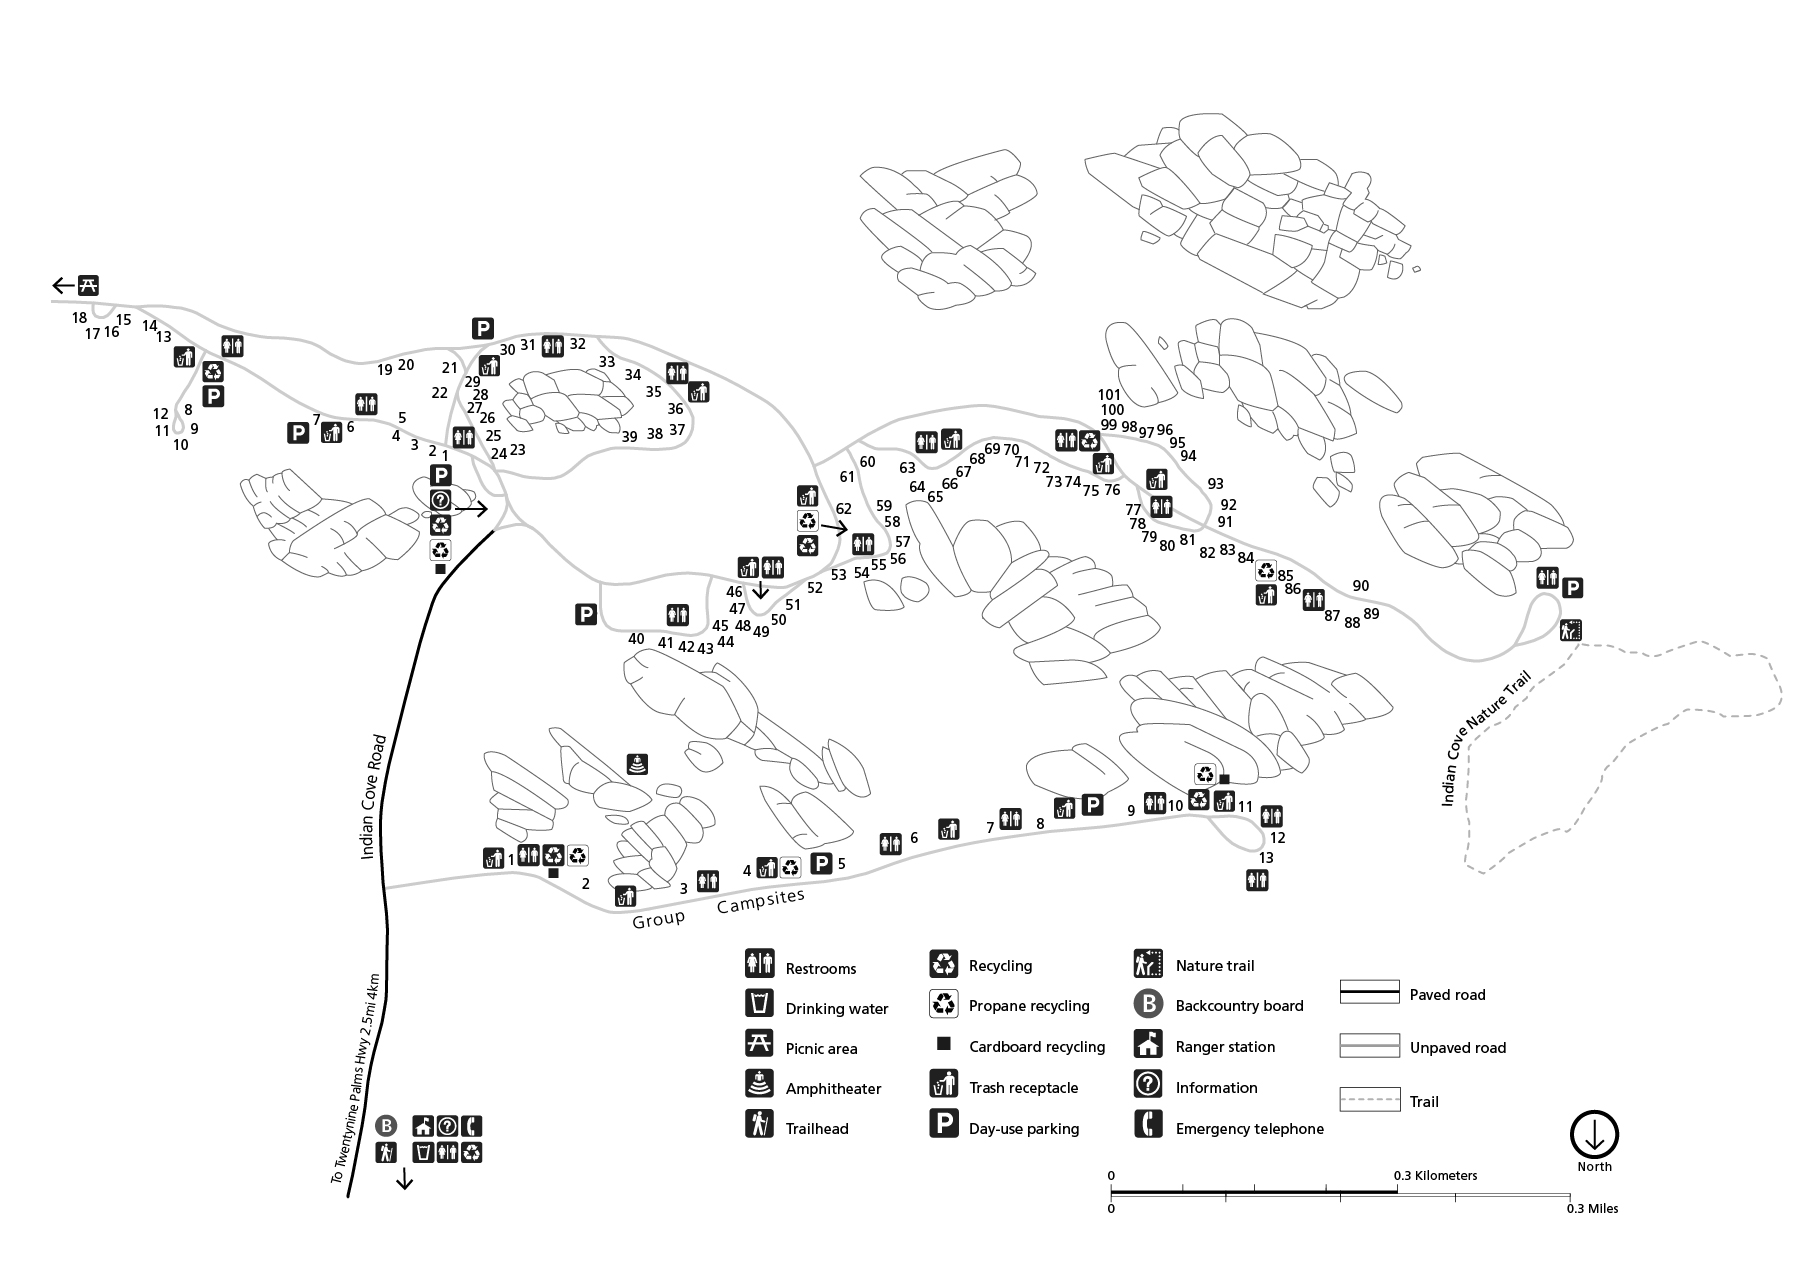 cove lake campsite map